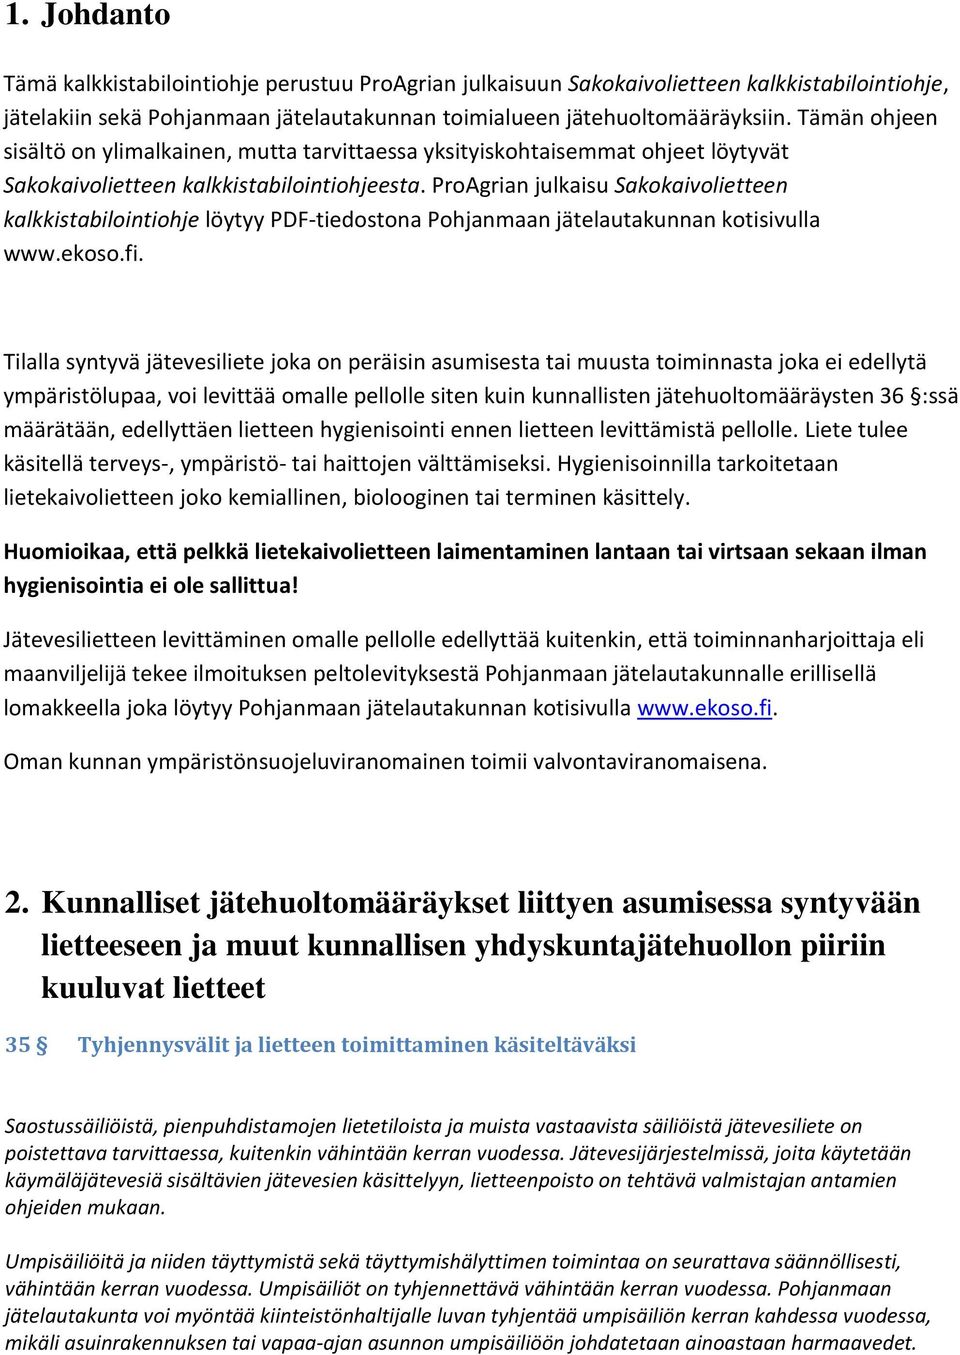 ProAgrian julkaisu Sakokaivolietteen kalkkistabilointiohje löytyy PDF-tiedostona Pohjanmaan jätelautakunnan kotisivulla www.ekoso.fi.